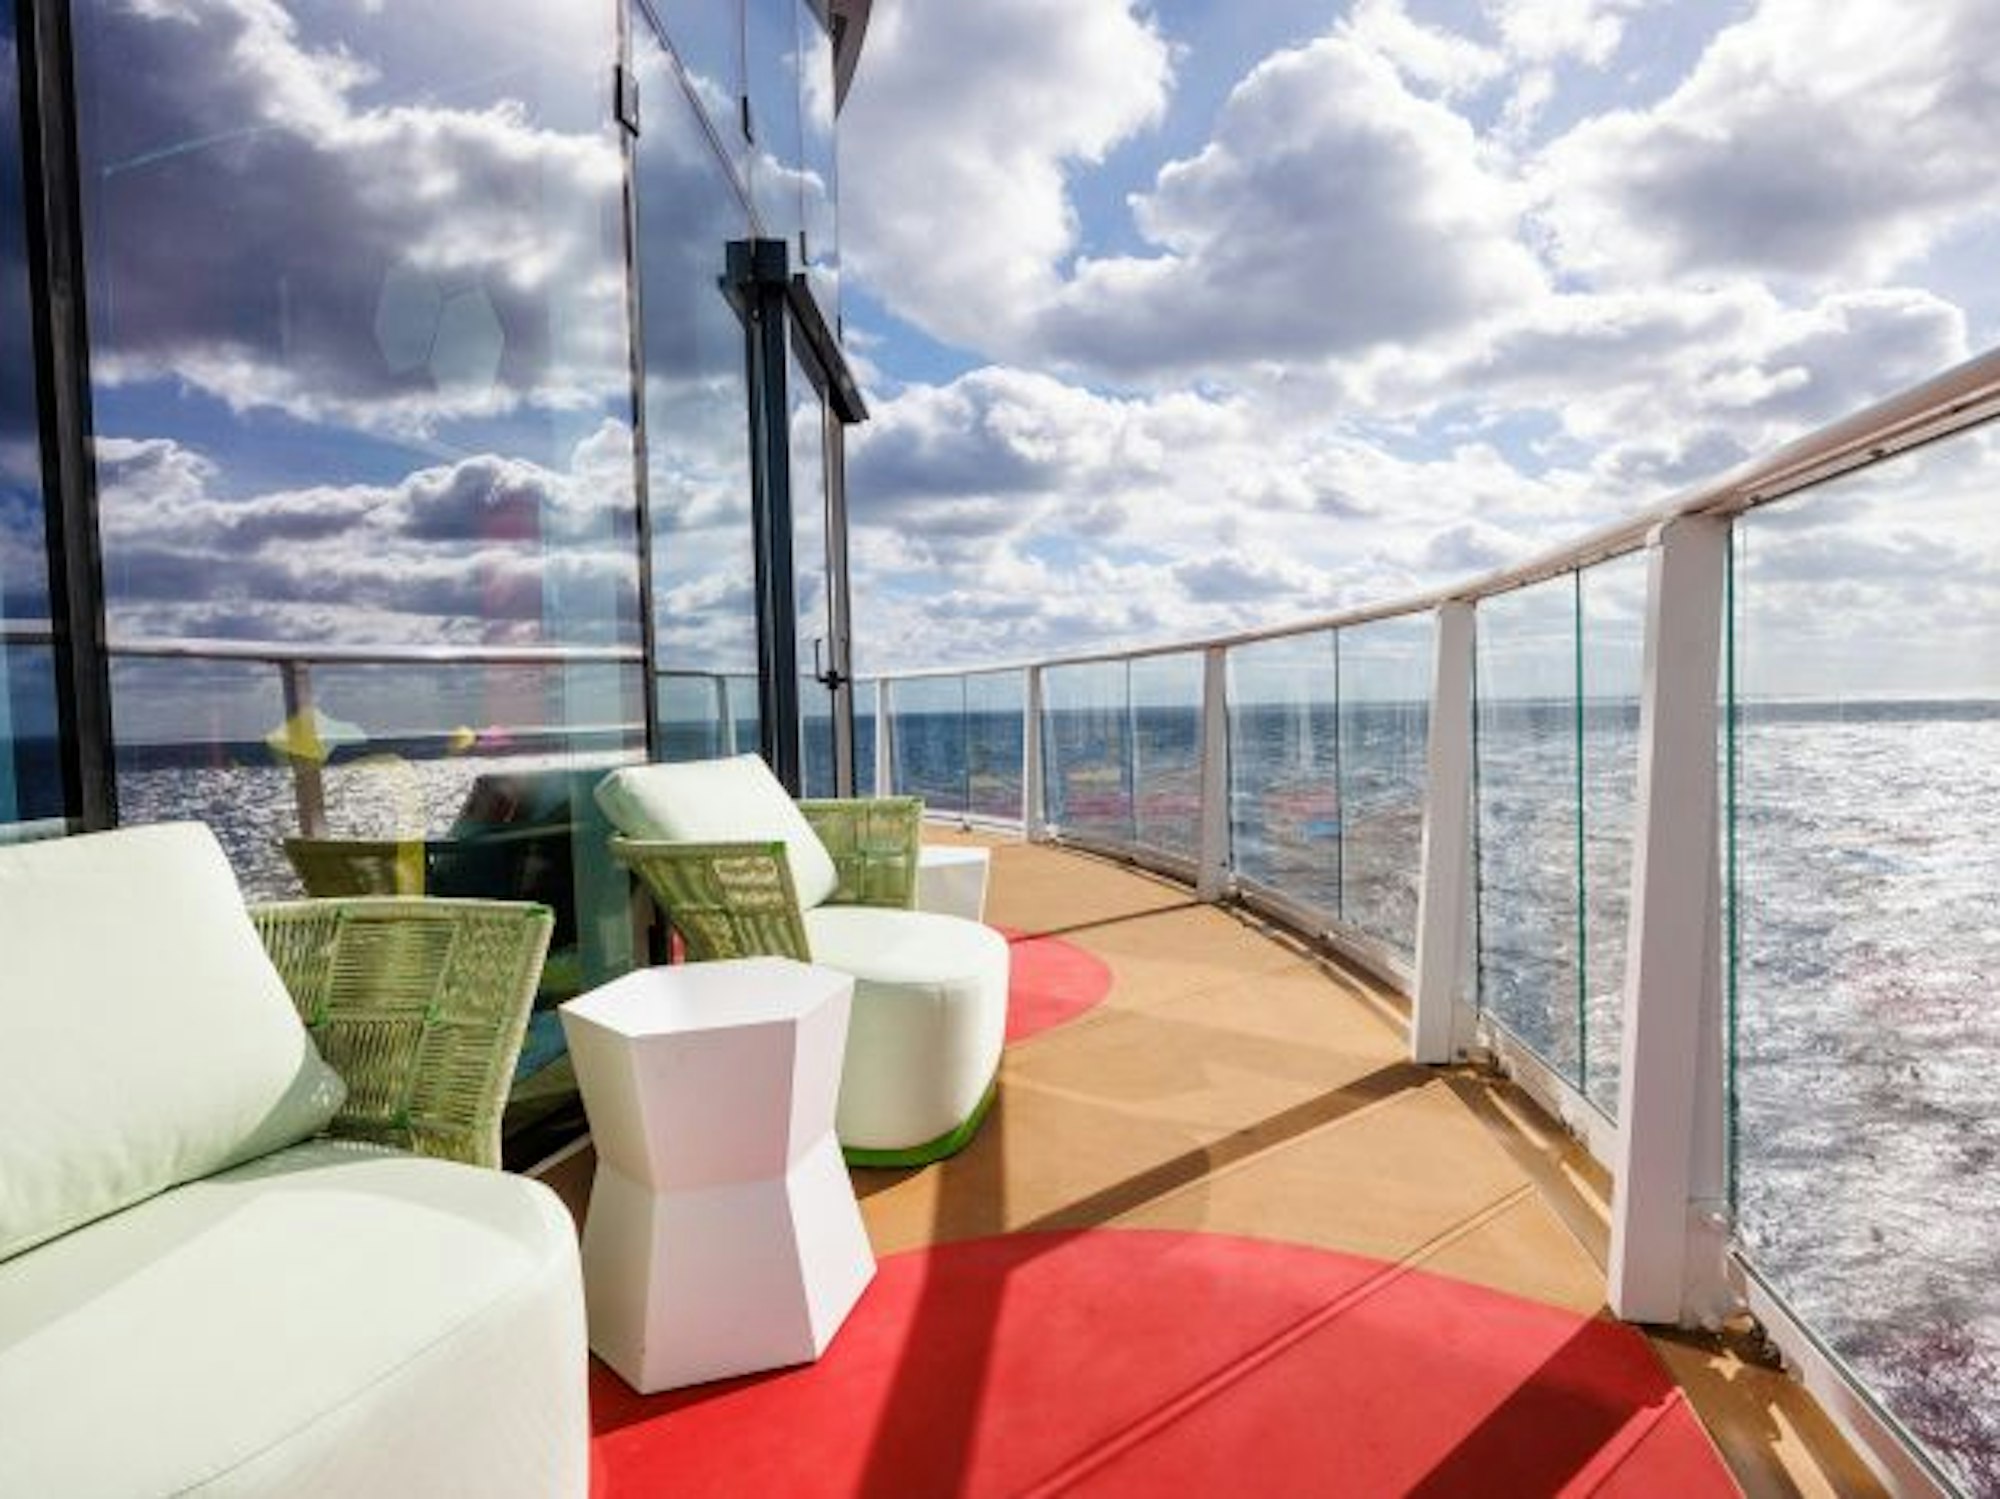 Eine umlaufende Terrasse mit Whirlpool und Sitzmöglichkeiten lädt zum Entspannen in ruhiger Umgebung ein.